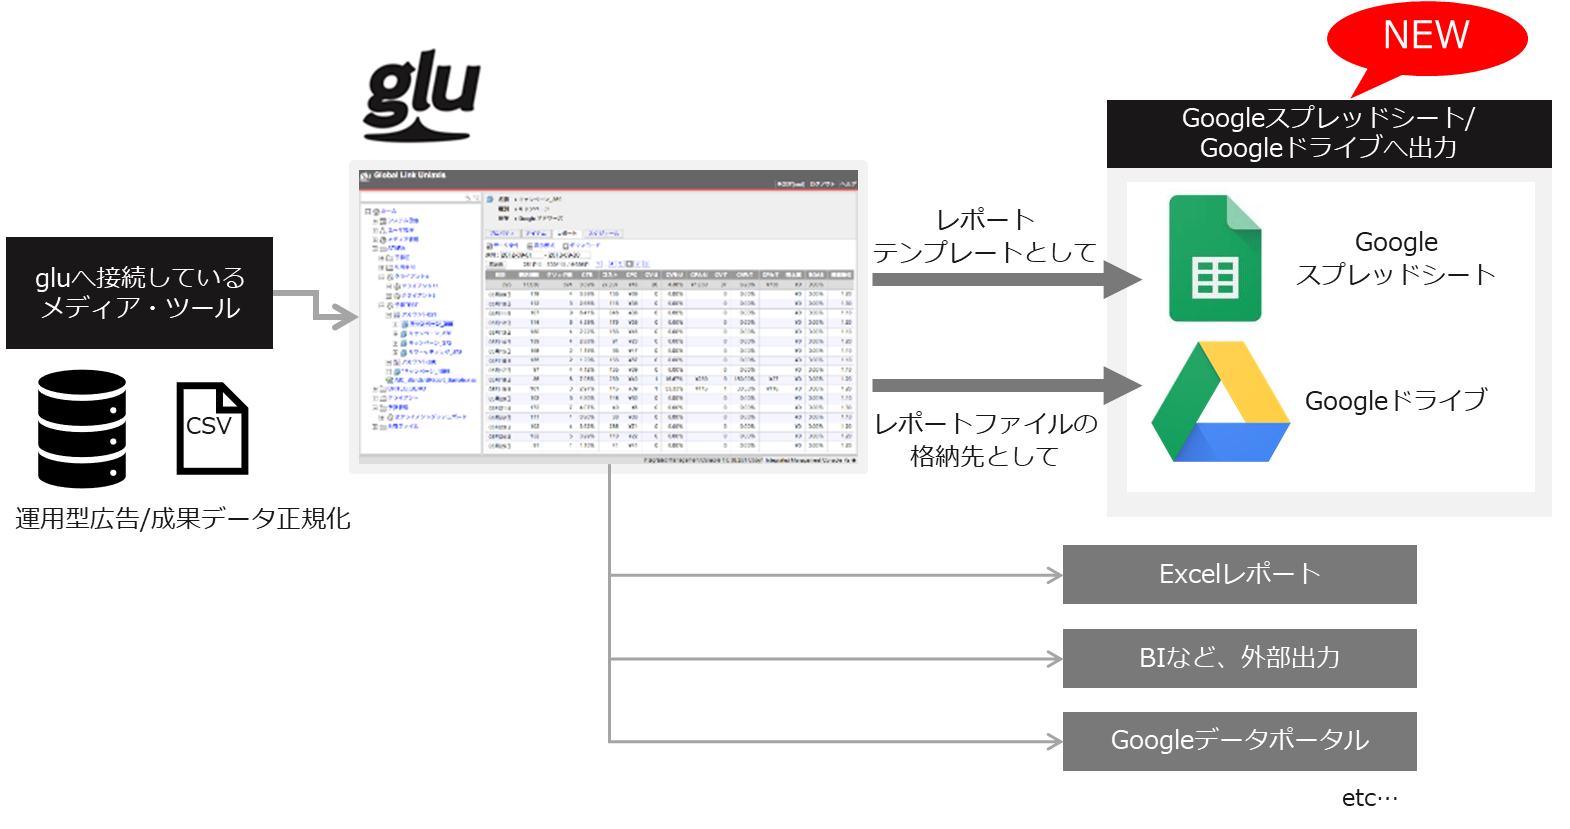 運用型広告レポート作成支援システム「glu」に Googleスプレッドシート、Googleドライブへの出力機能を追加